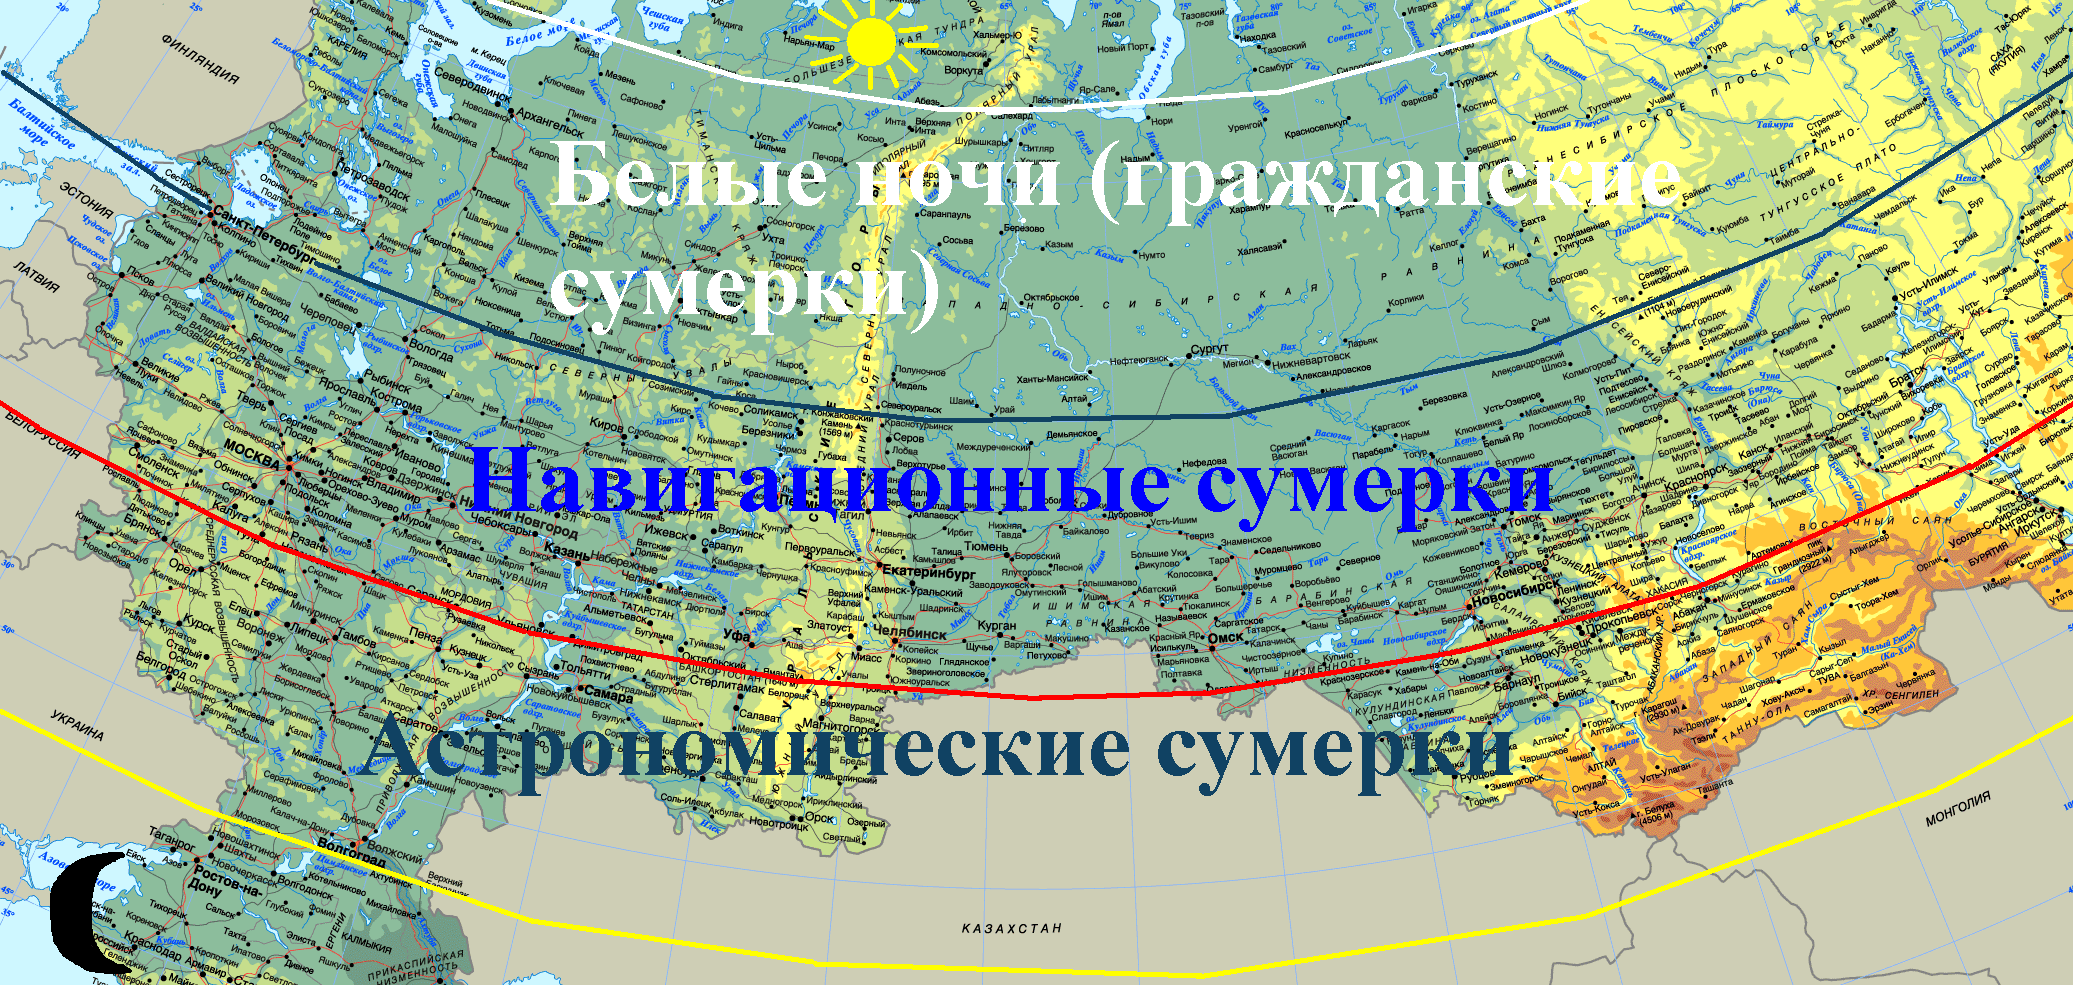 Полярный круг на территории россии. Карта белых ночей в России. Белые ночи на карте. Сумерки гражданские навигационные астрономические. Полярный круг на карте.